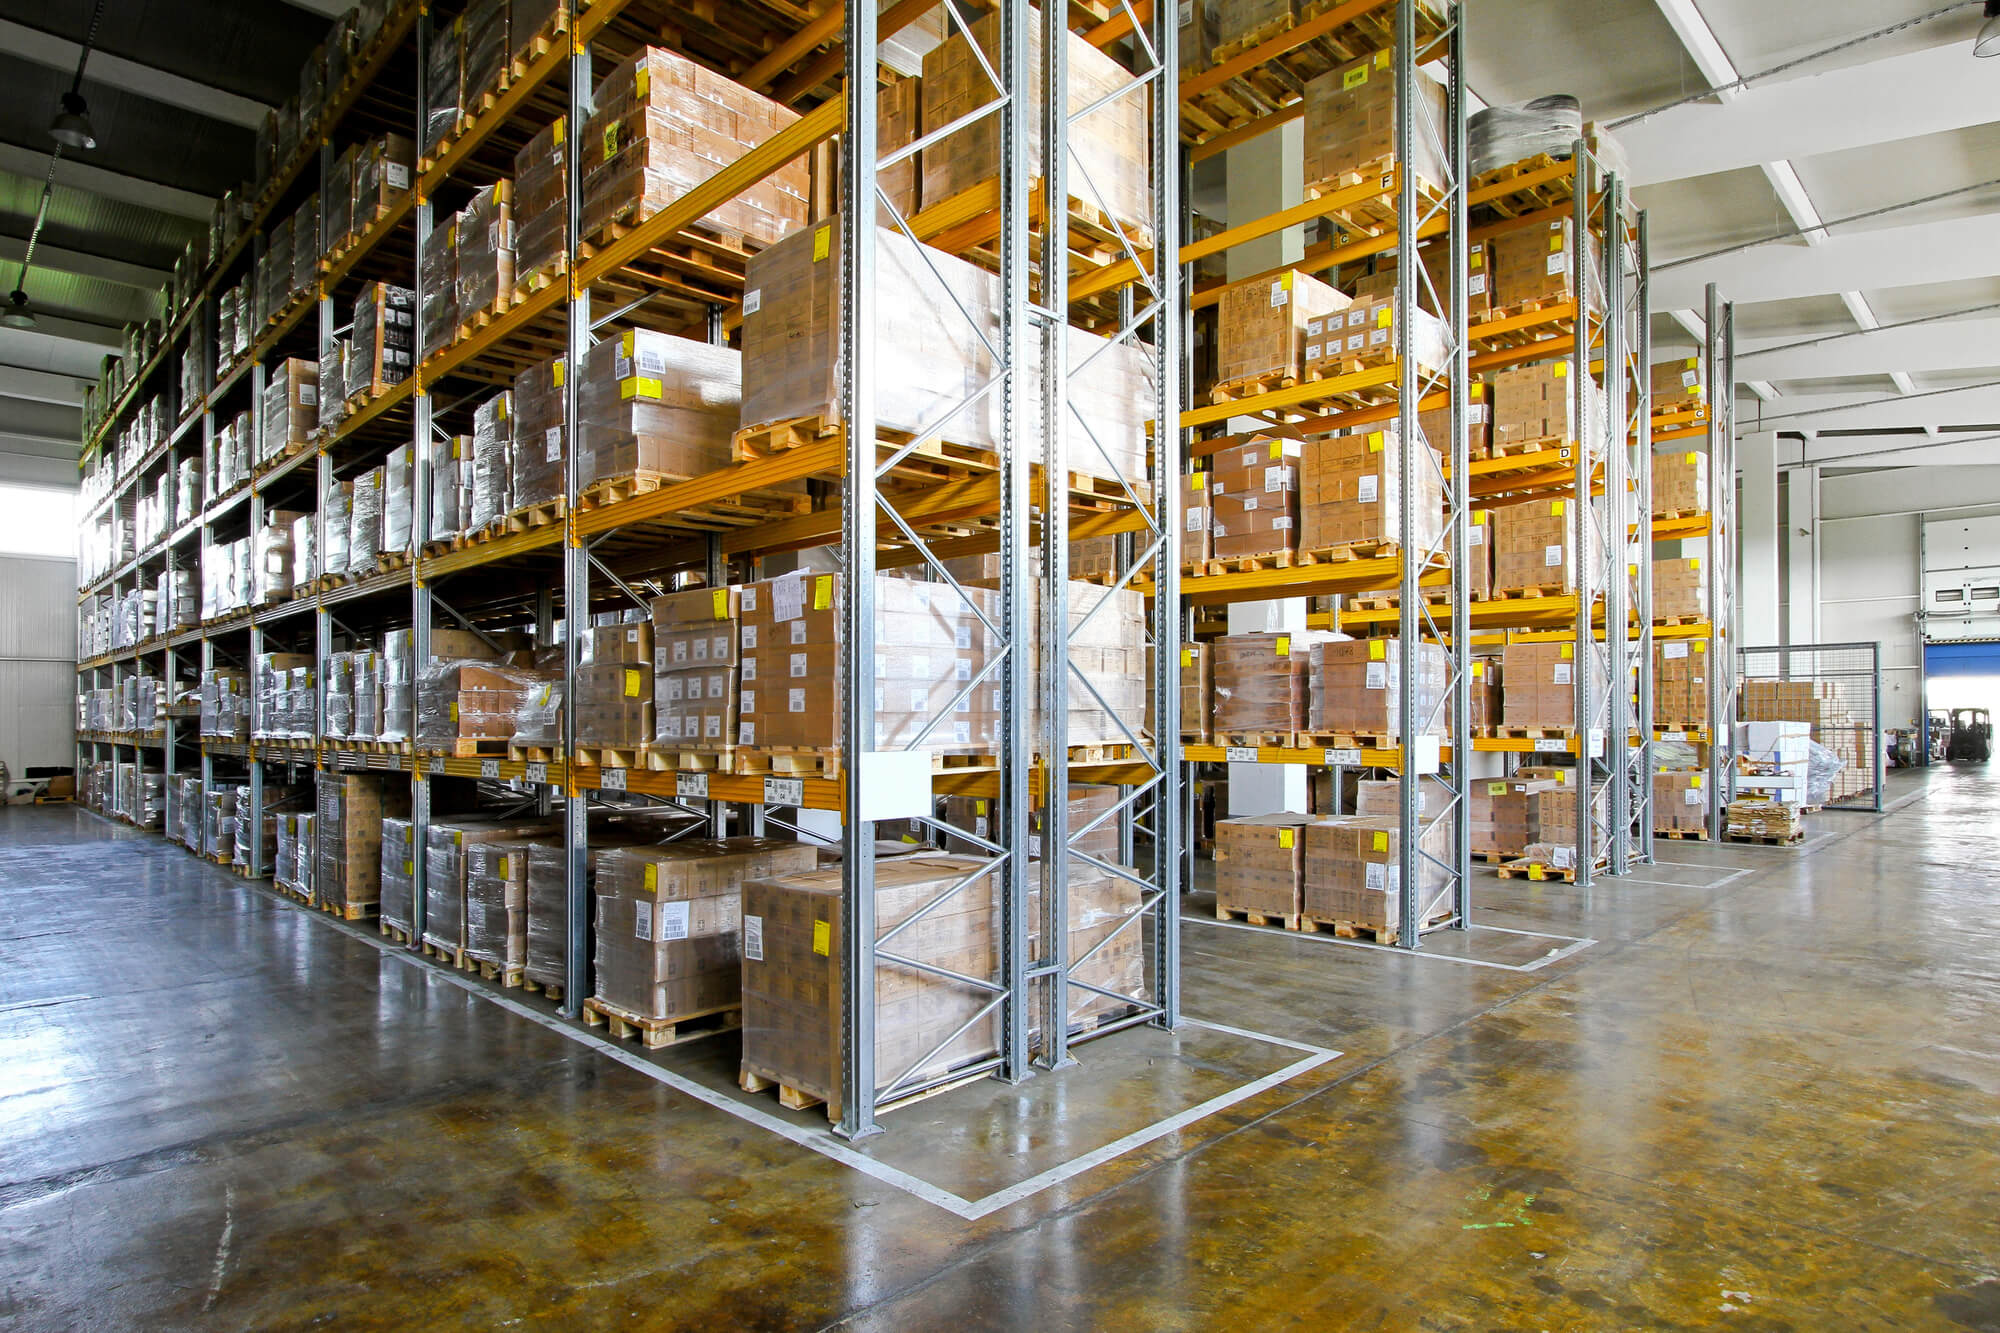 Large warehouse storage facility